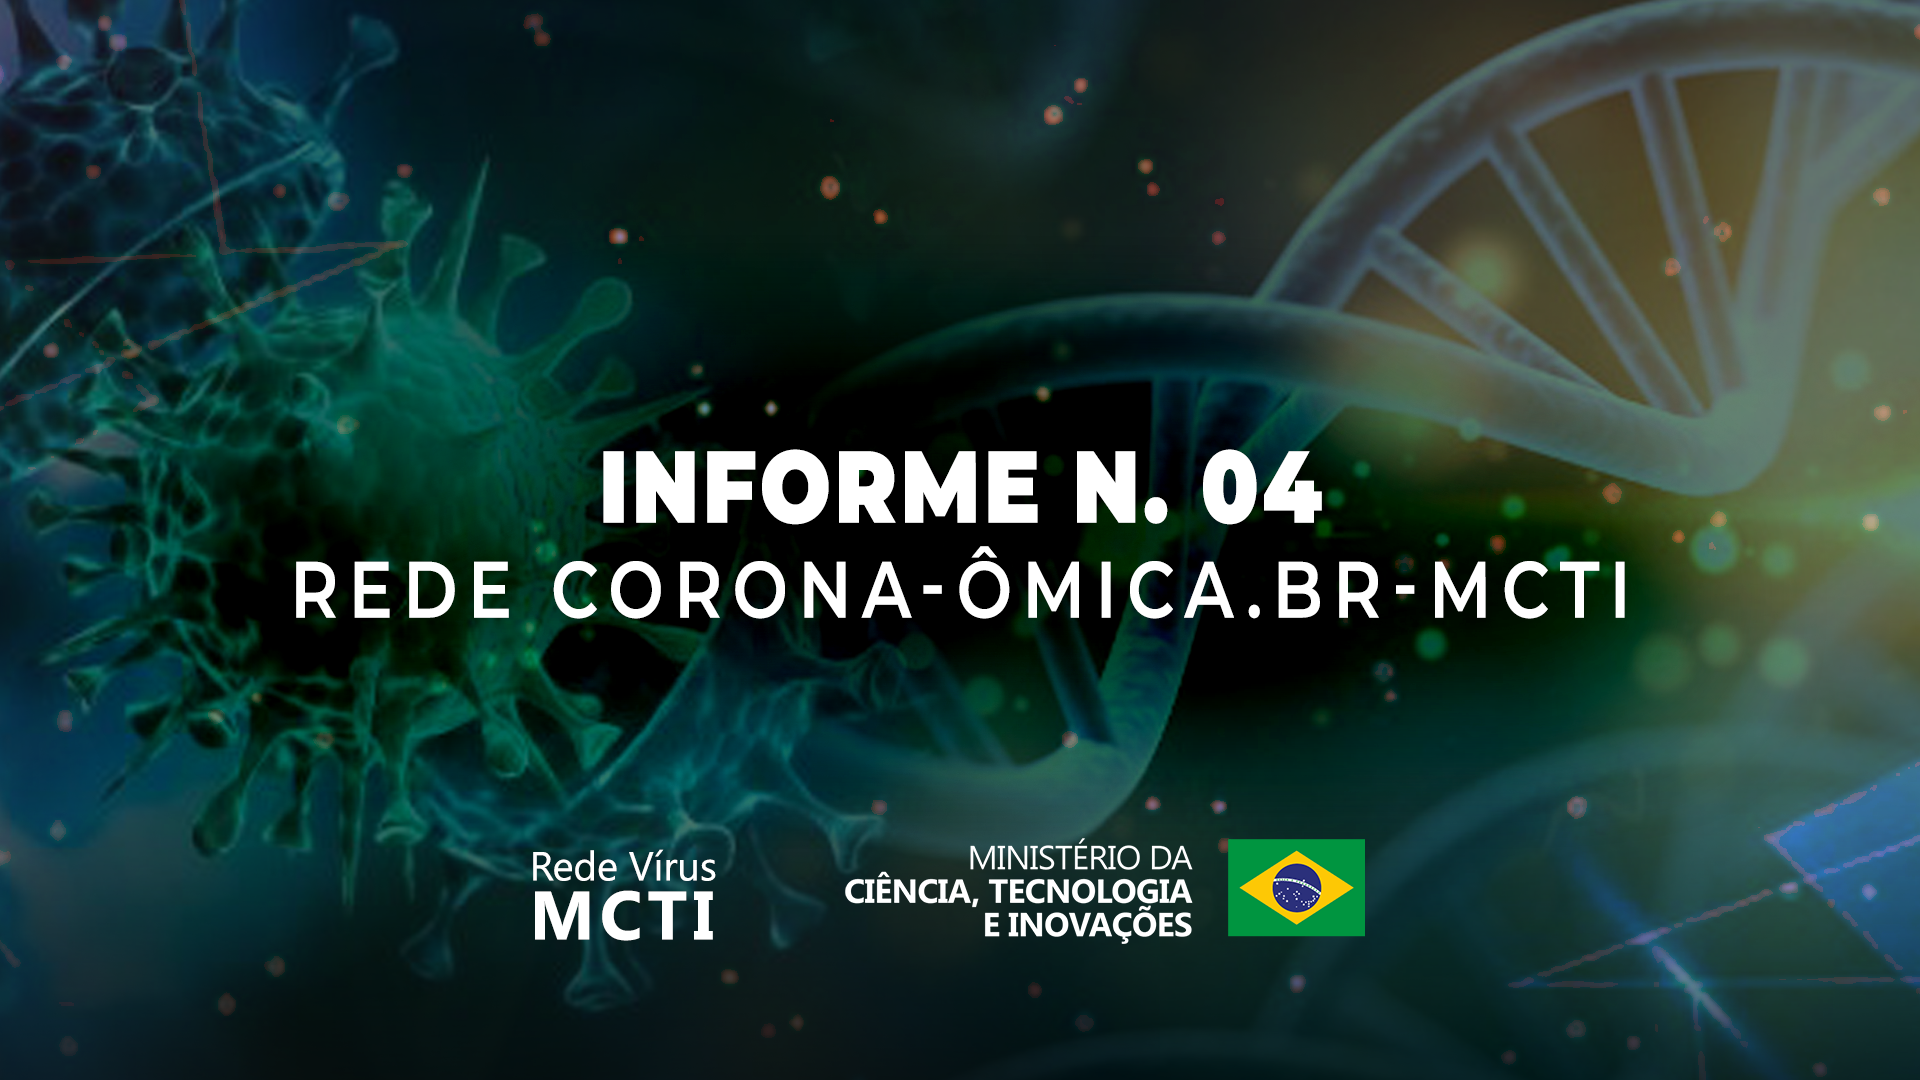 Variantes do Novo coronavírus em circulação na cidade de São José dos Campos, SP, alerta a Rede CoronaÔmica.br MCTI